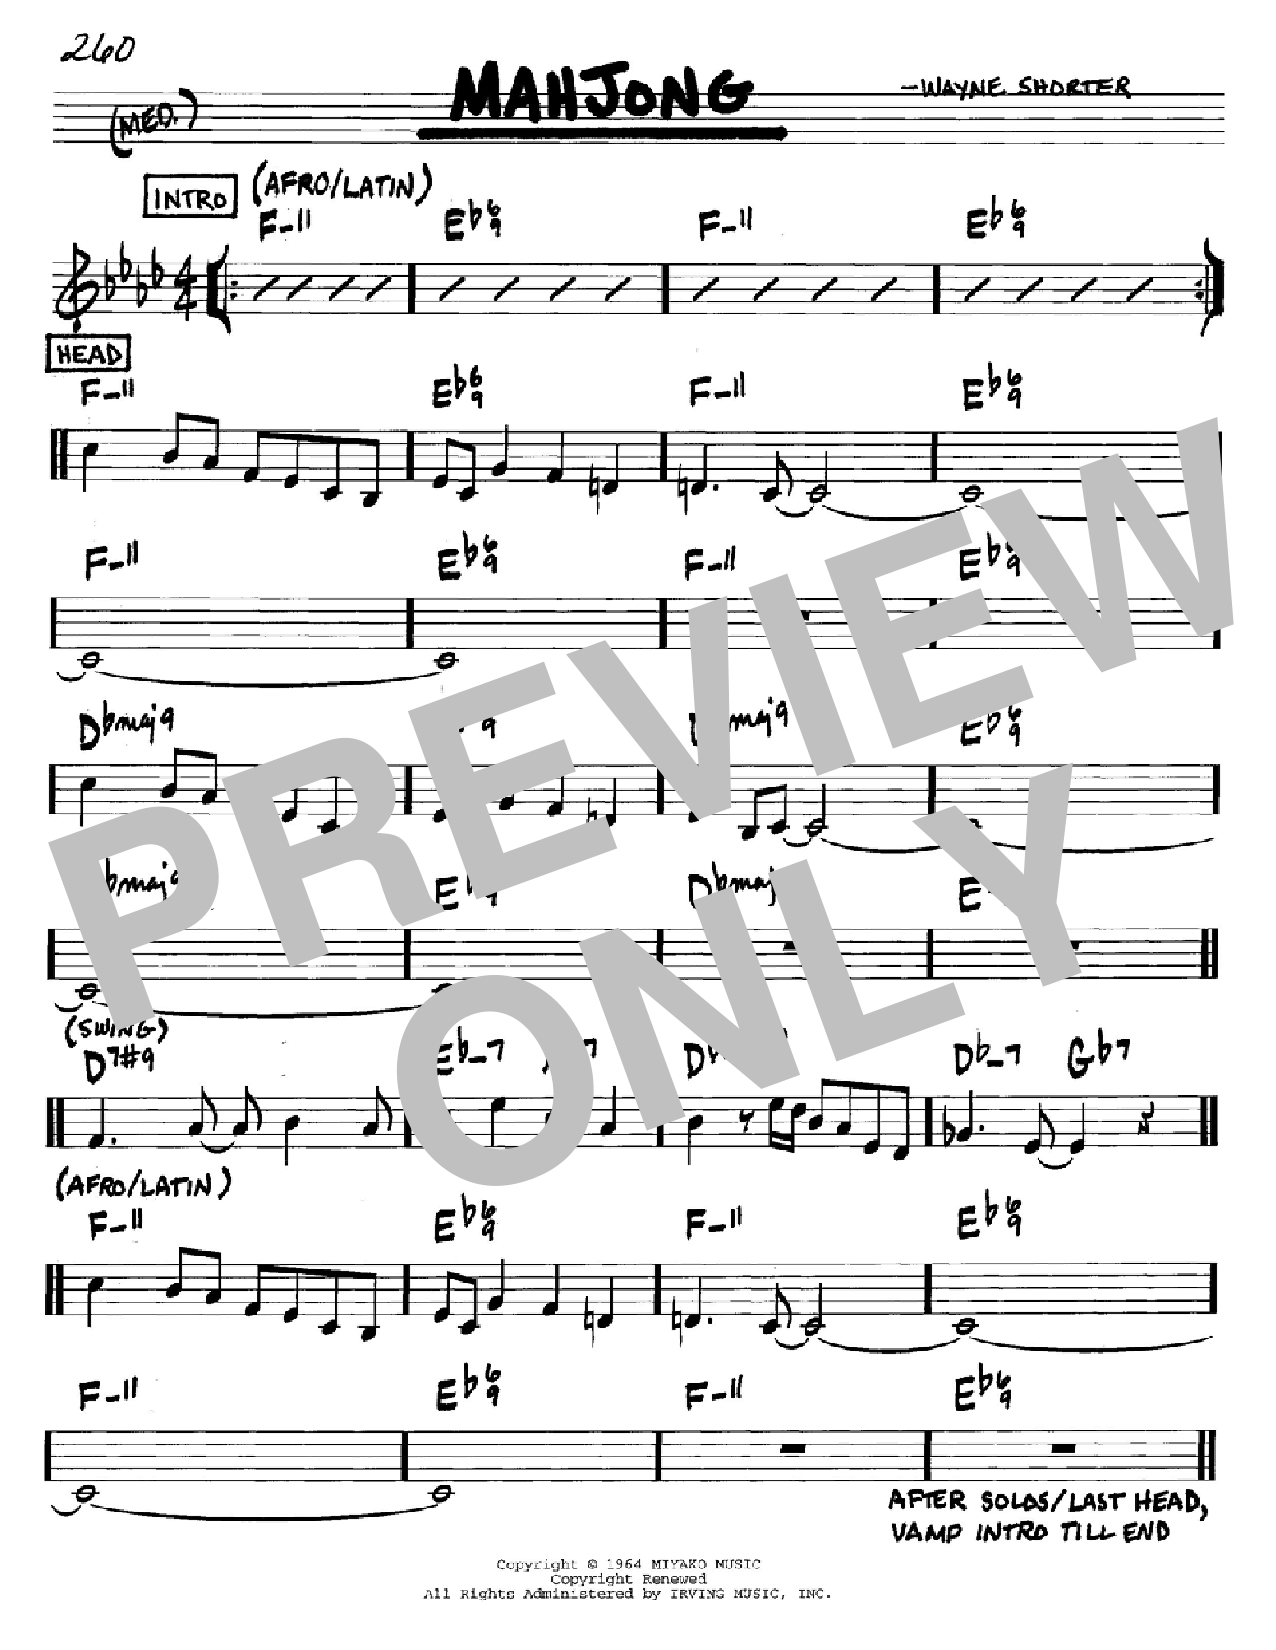 Wayne Shorter Mahjong Sheet Music Notes & Chords for Real Book - Melody & Chords - C Instruments - Download or Print PDF